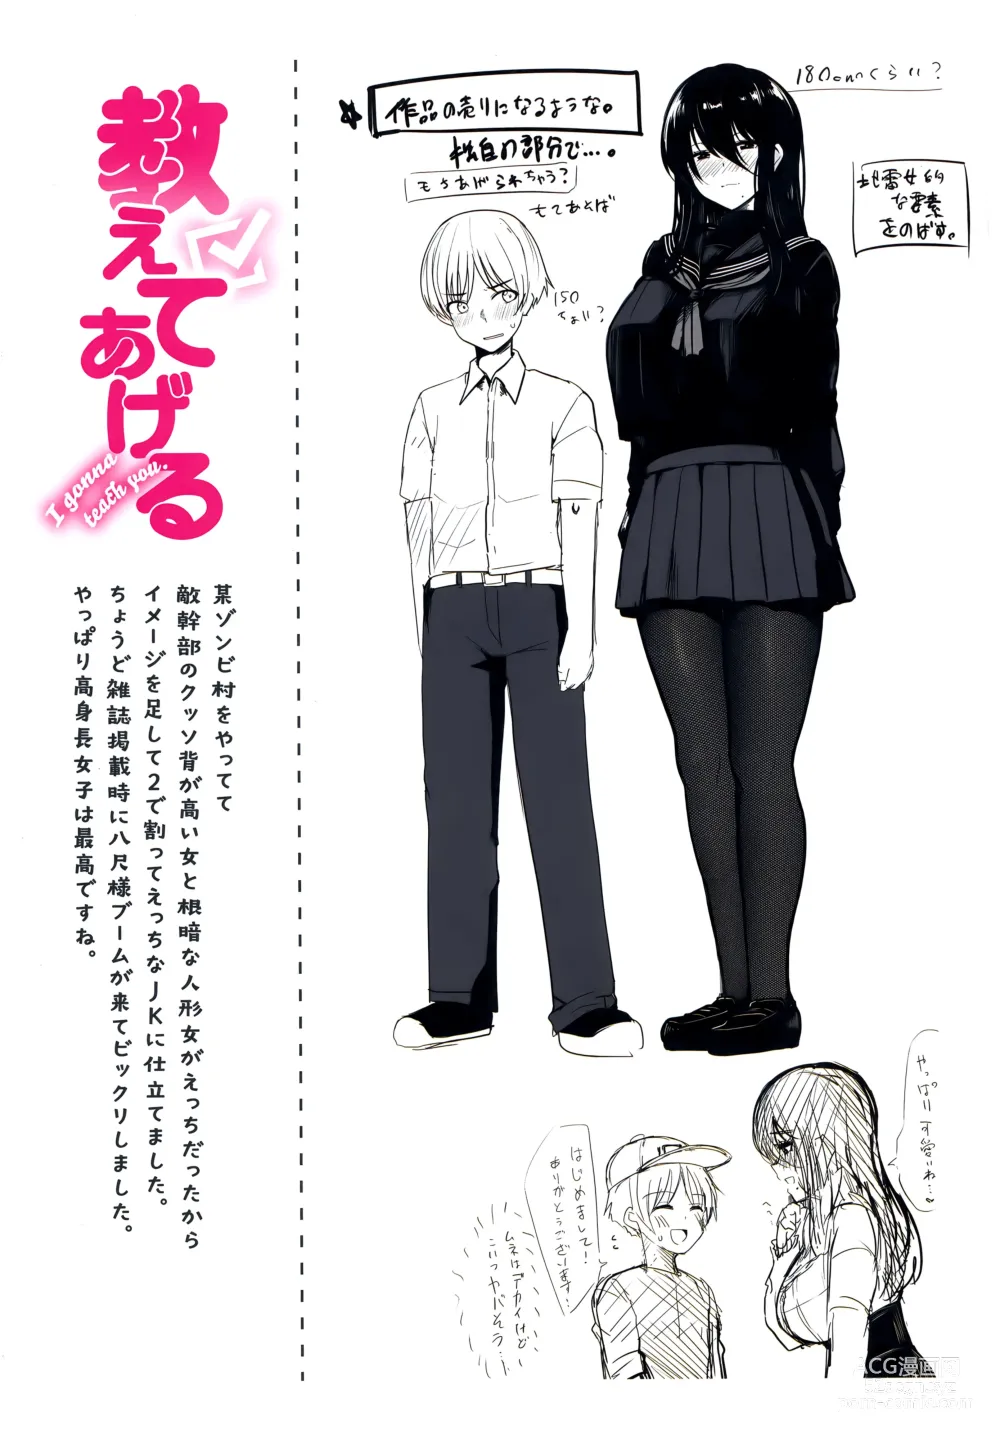 Page 167 of manga Nukunuku Seikatsu - Life Full of Sex + Melonbooks Kounyu Tokuten + Toranoana Kounyu Tokuten